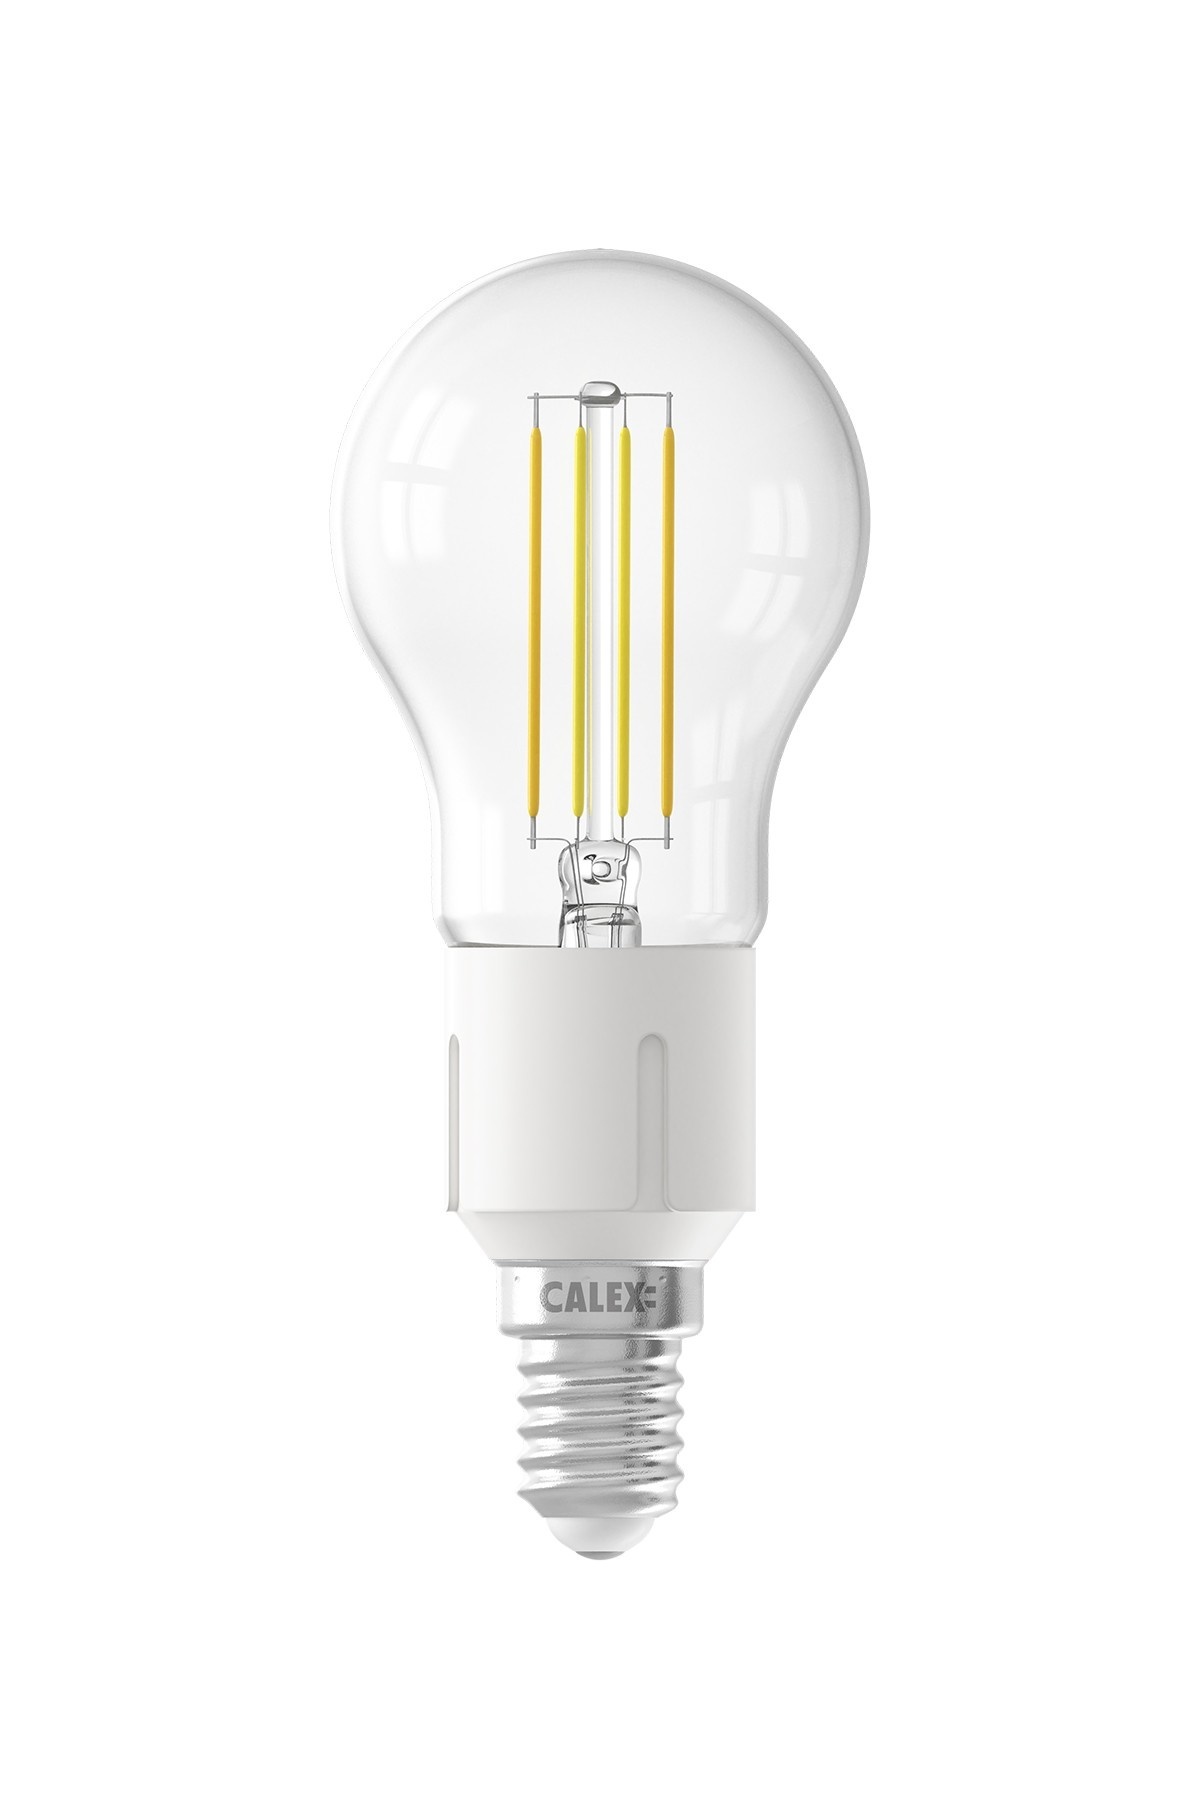 Calex Ampoule Connectée Lamp - E14 - 4,5W - 450 Lumen - 1800K - 3000K -  Lampe Vintage - Lampesonline